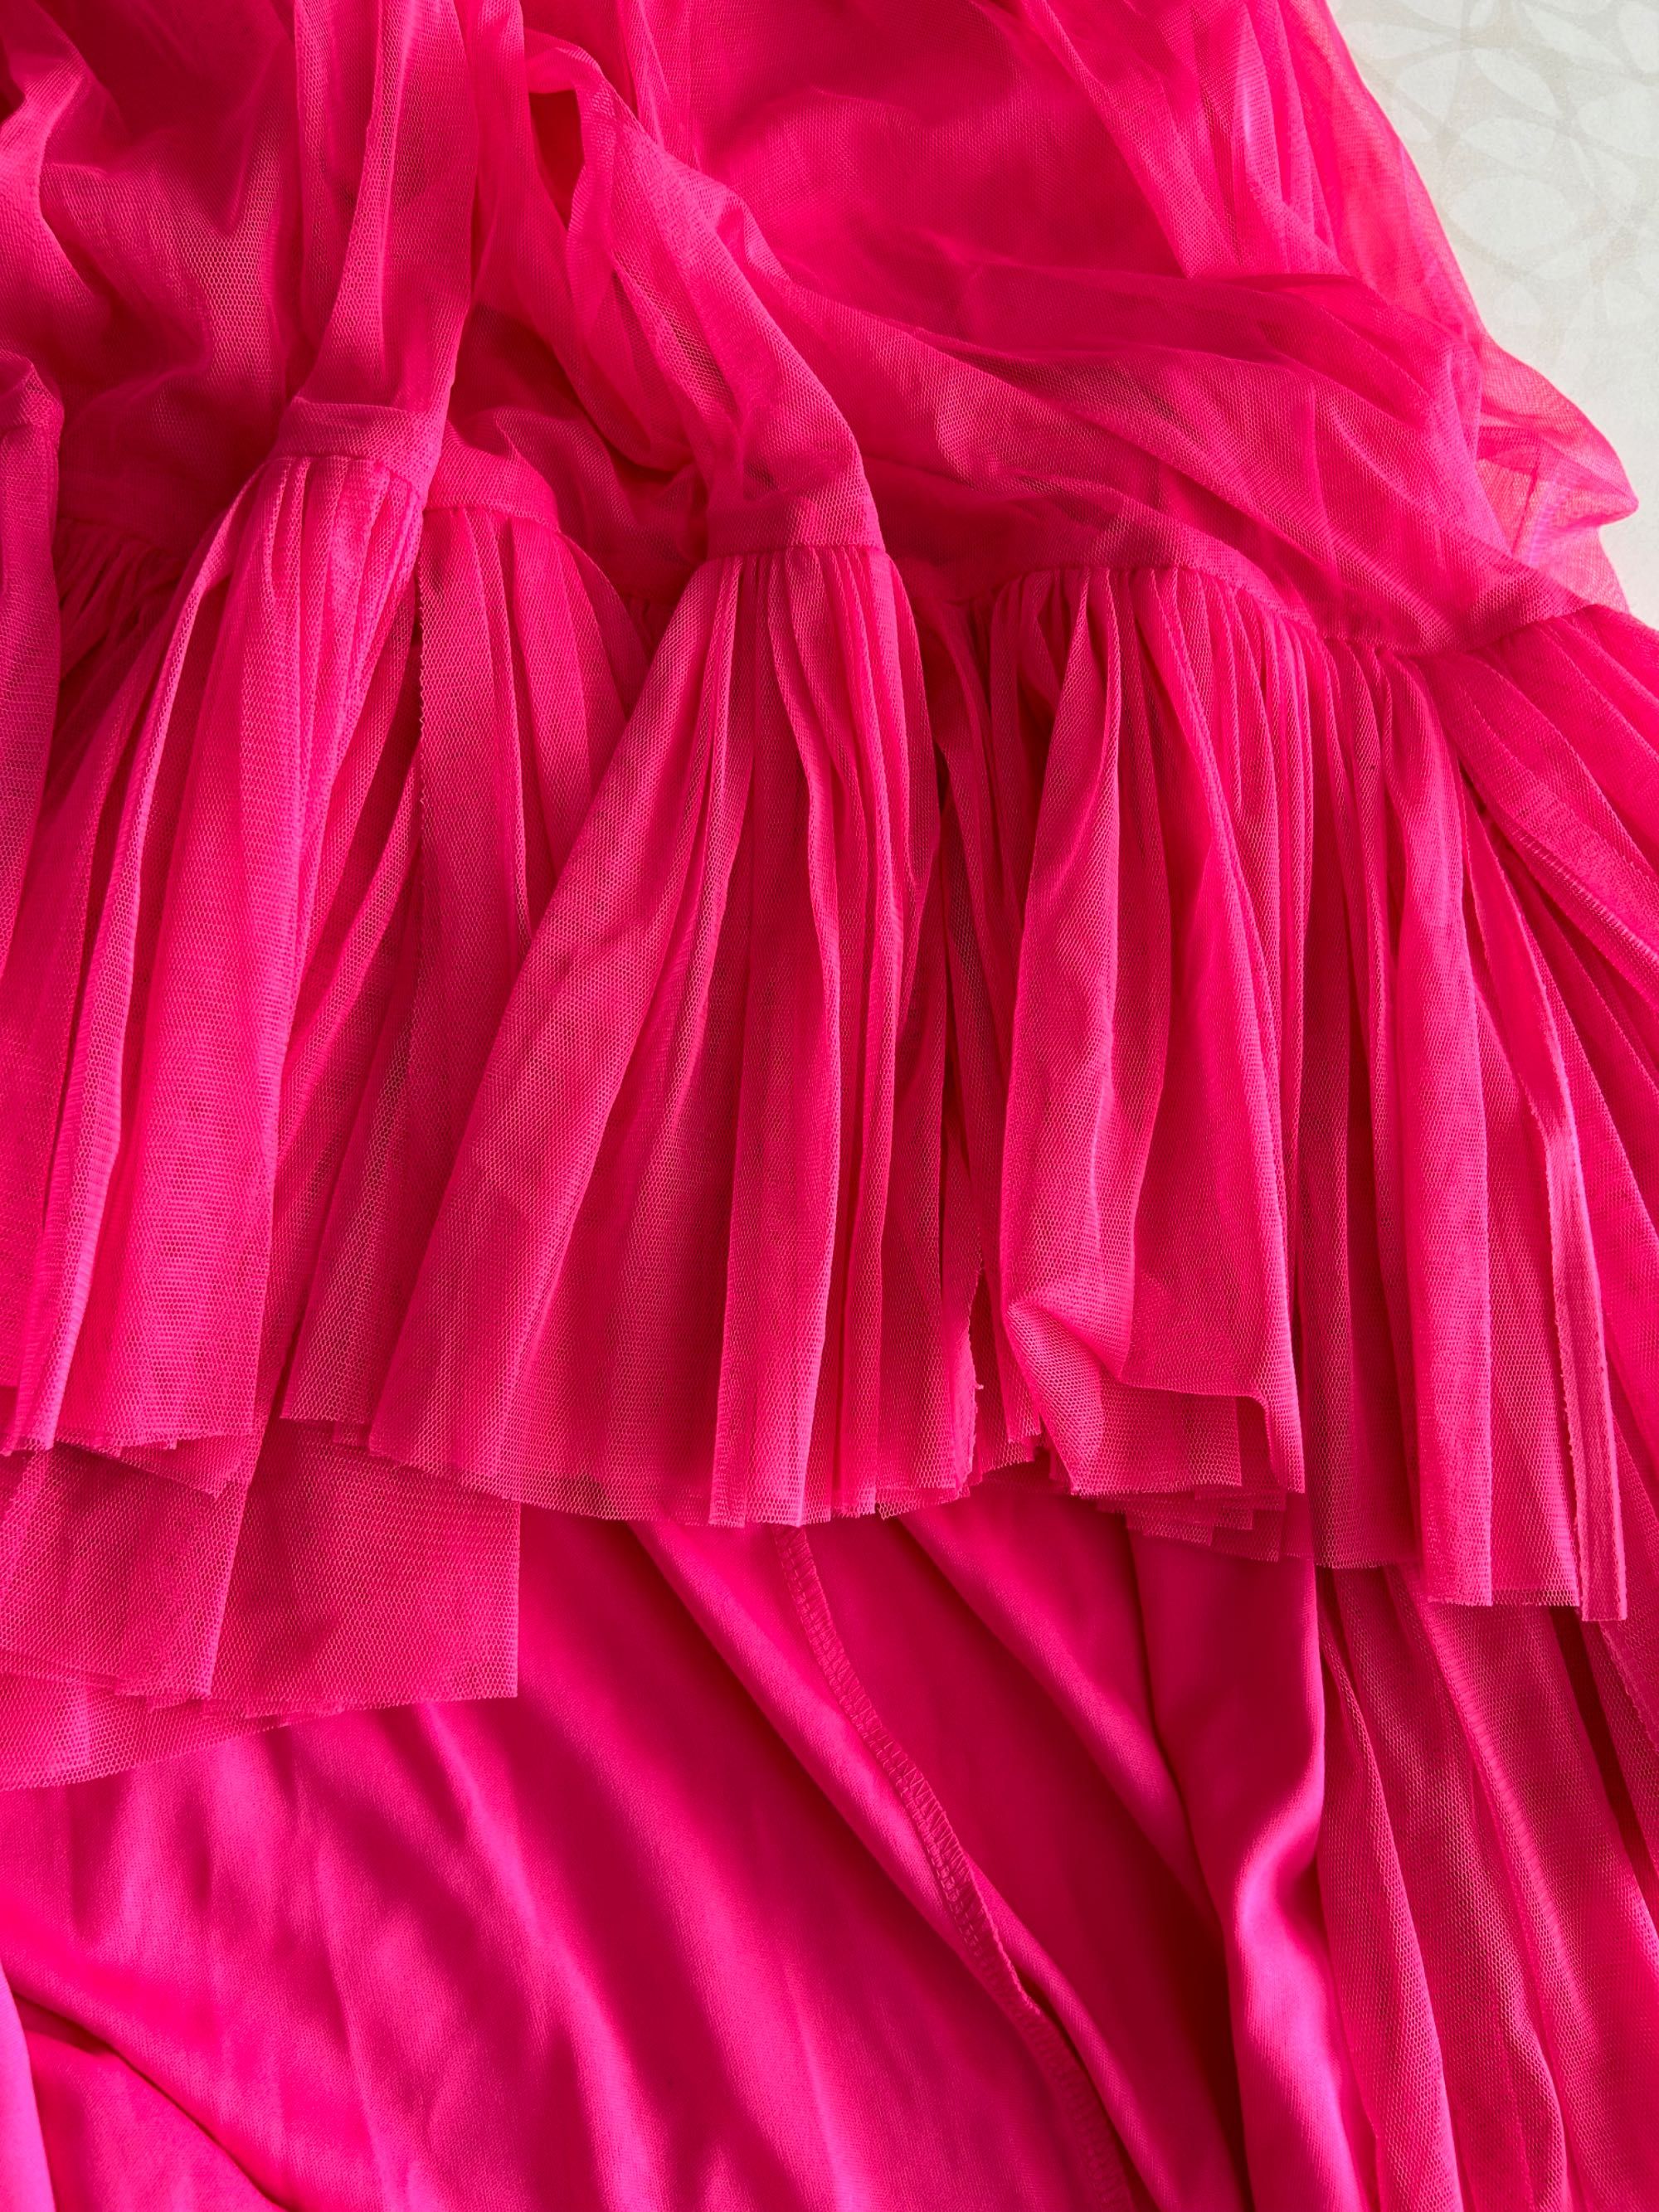 Цикламена дълга рокля Lace&Beads с тюл, размер С